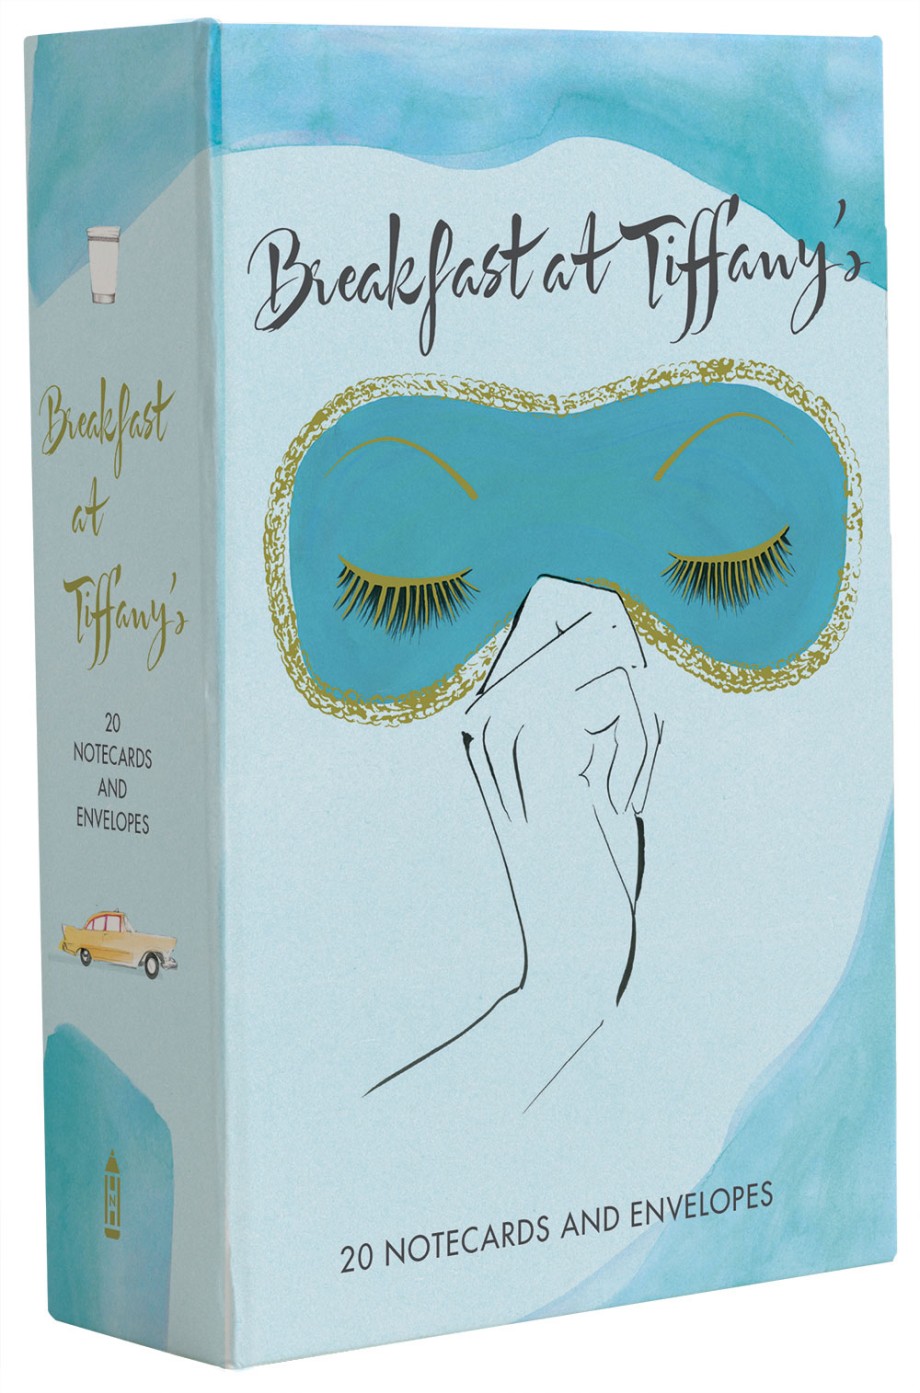 Breakfast at Tiffany's Notecards 